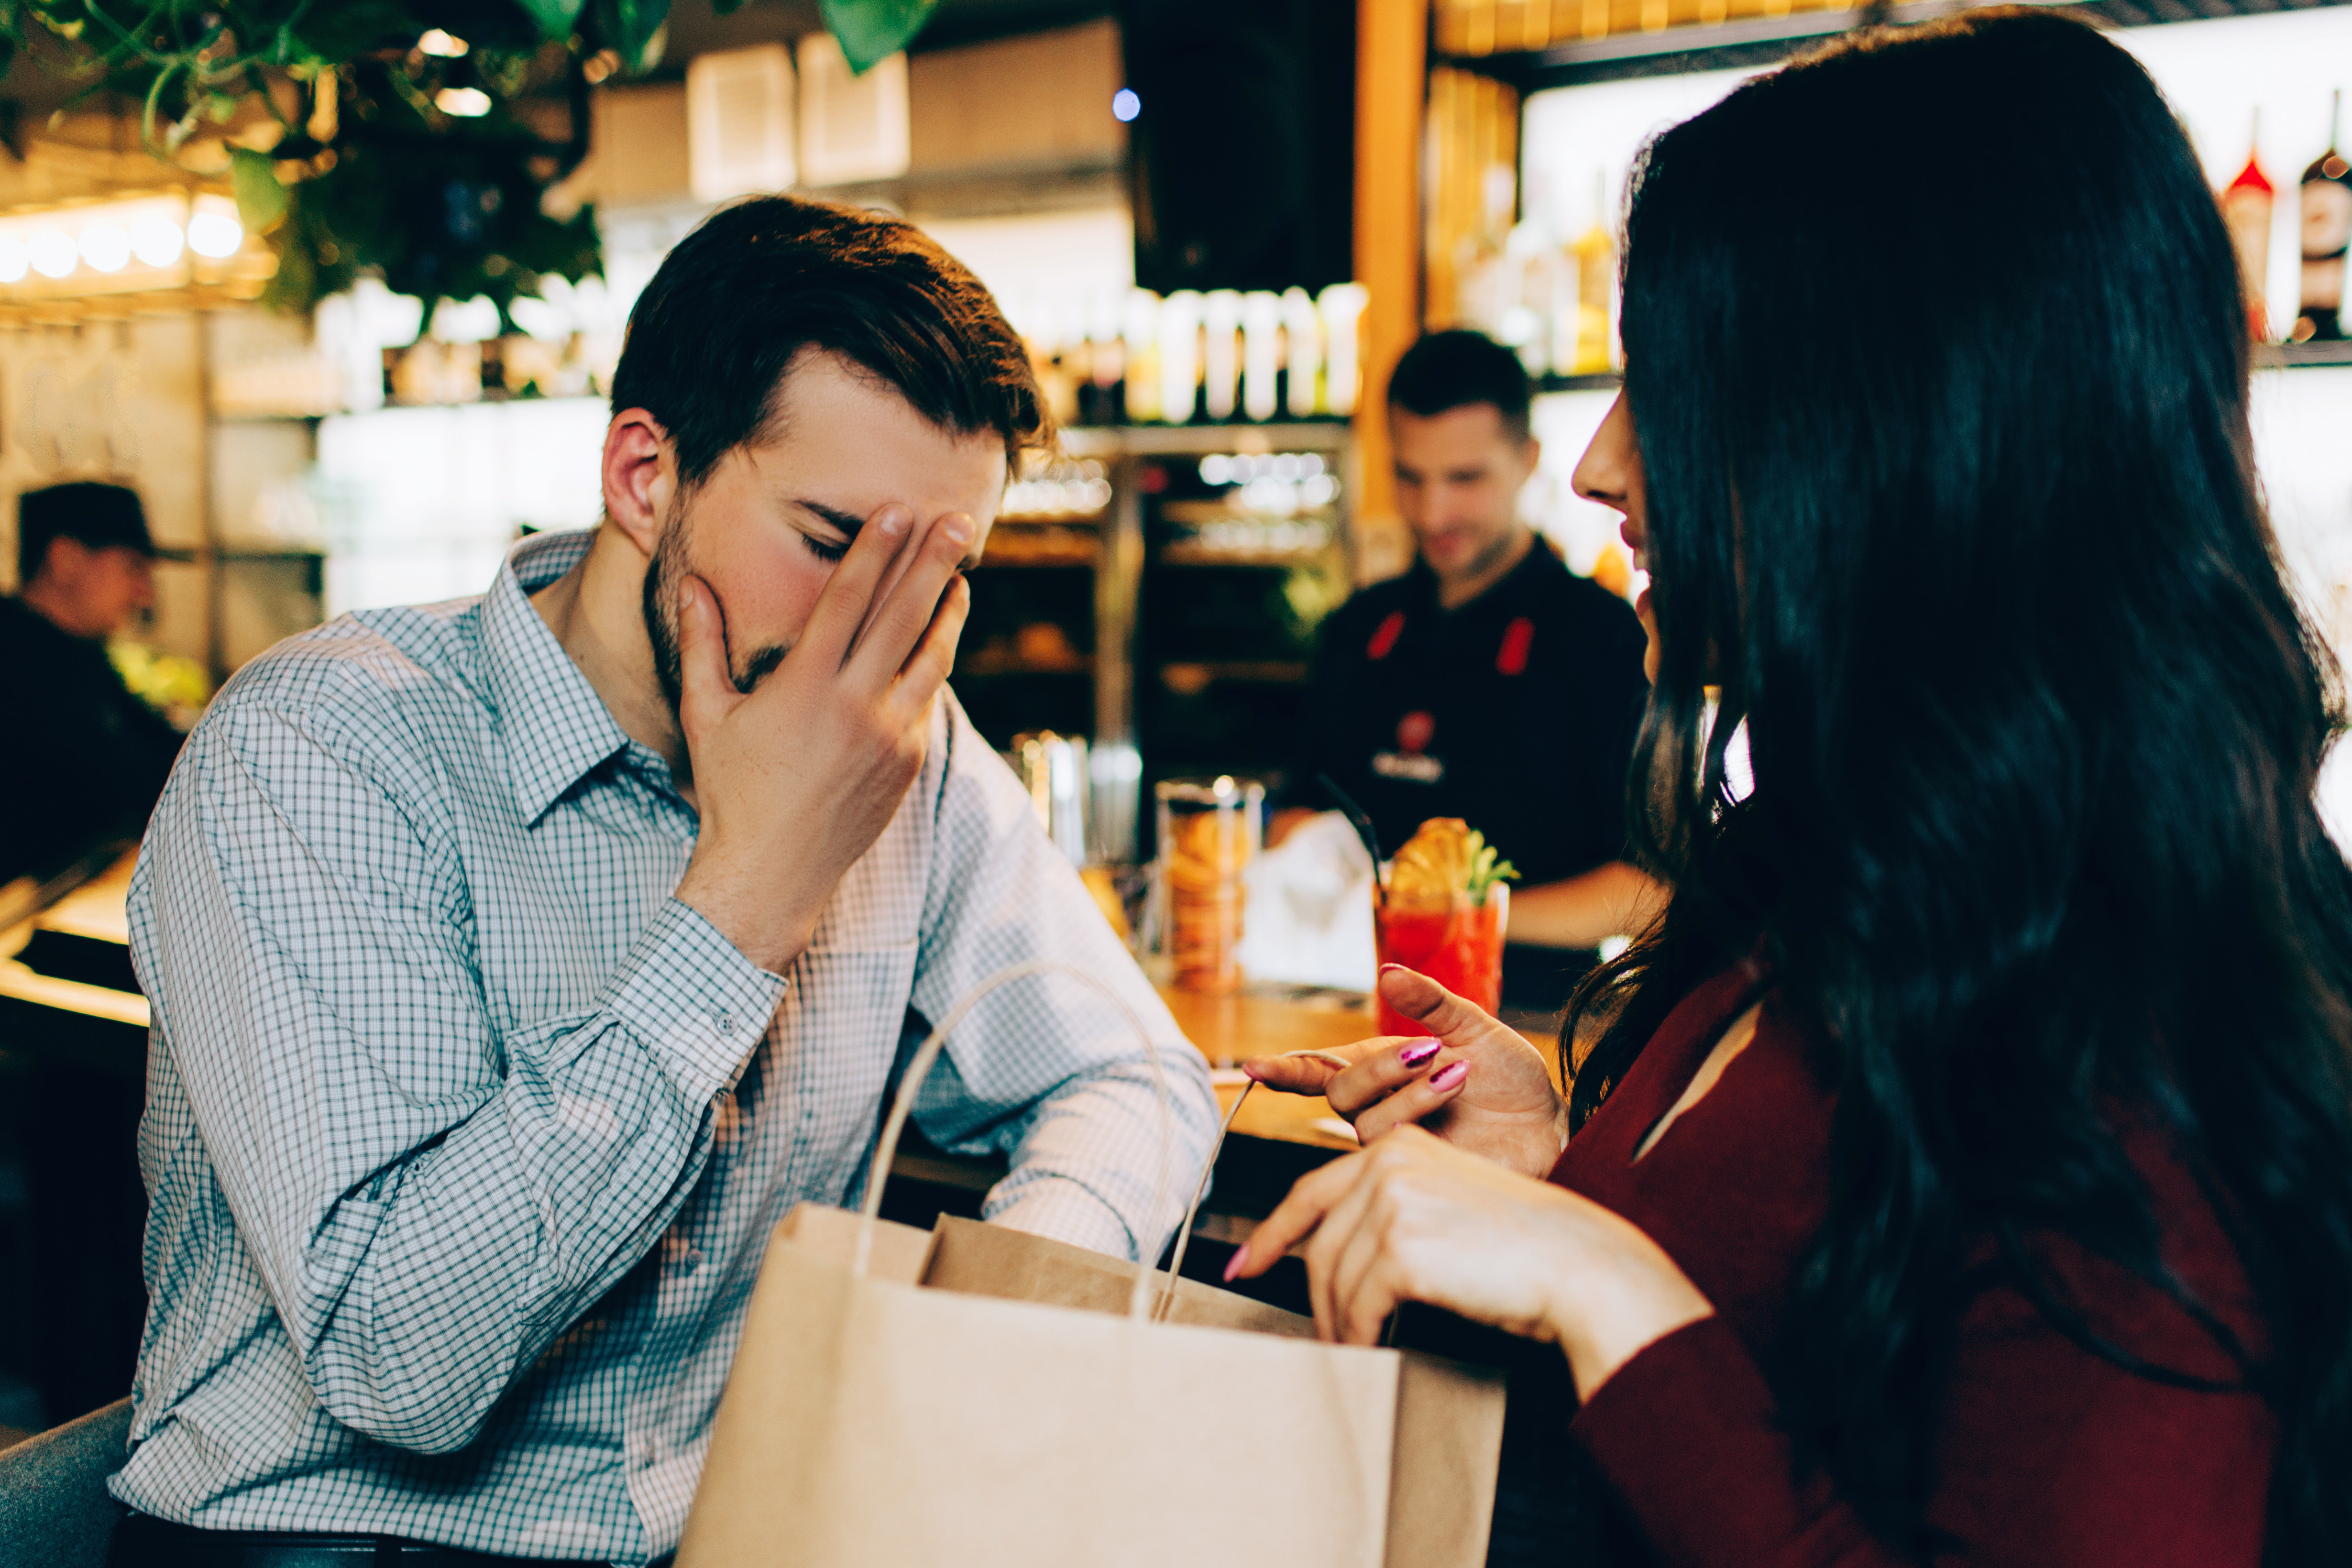 Un hombre apoya la cara en la mano mientras la mujer que tiene delante sigue hablando | Foto: Shutterstock